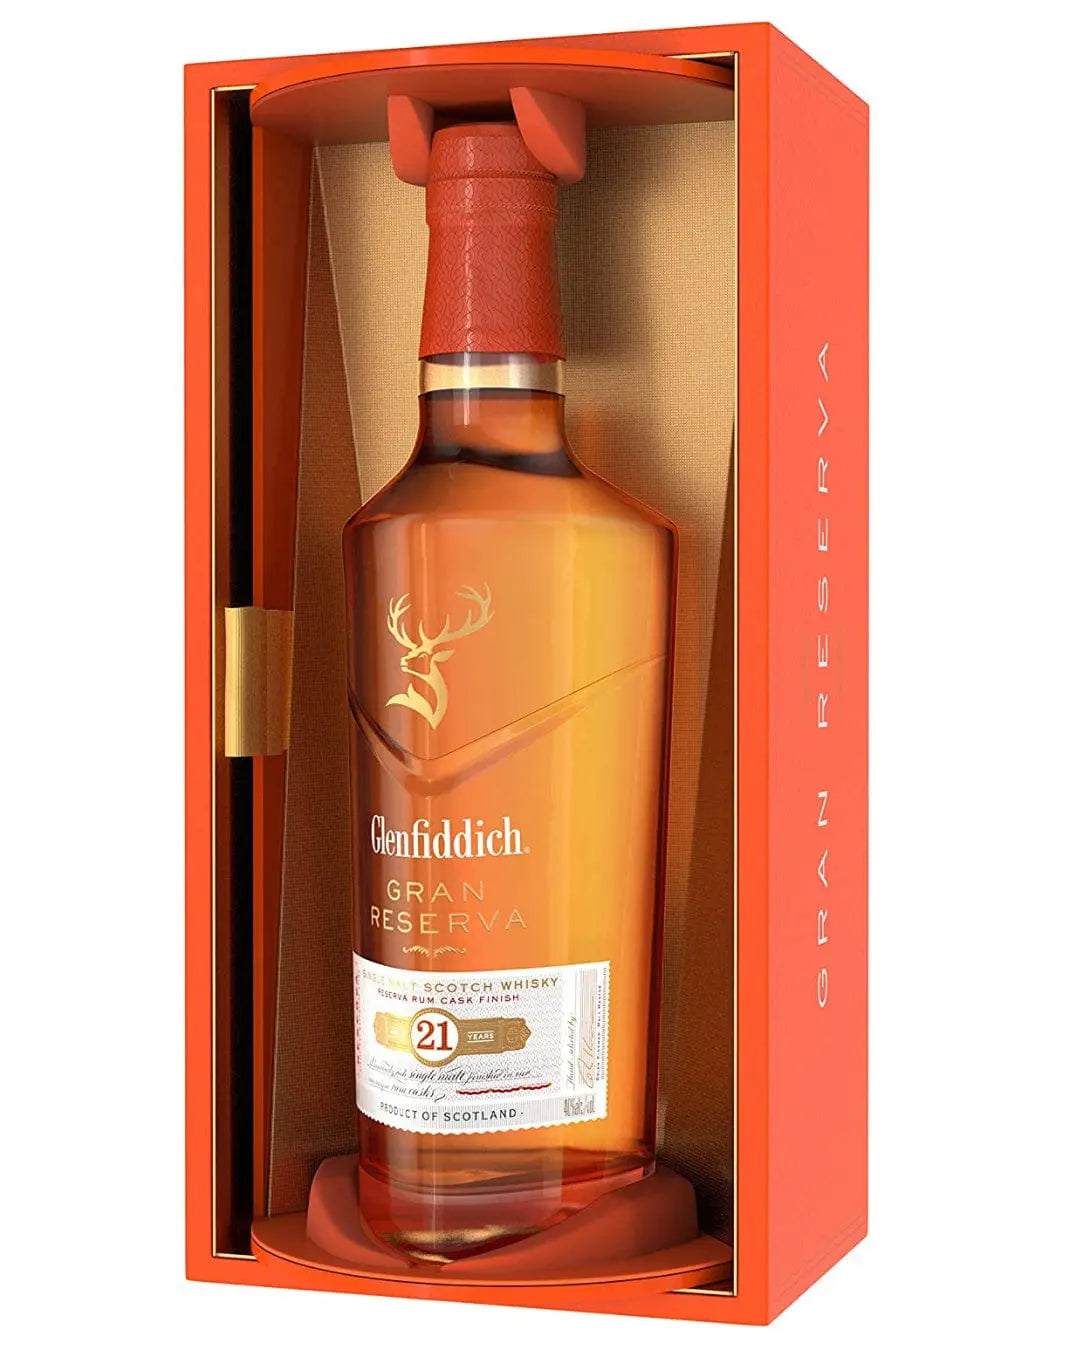 Glenfiddich 21 Year Old Single Malt Scotch Whisky, 70 cl Whisky 5010327324081